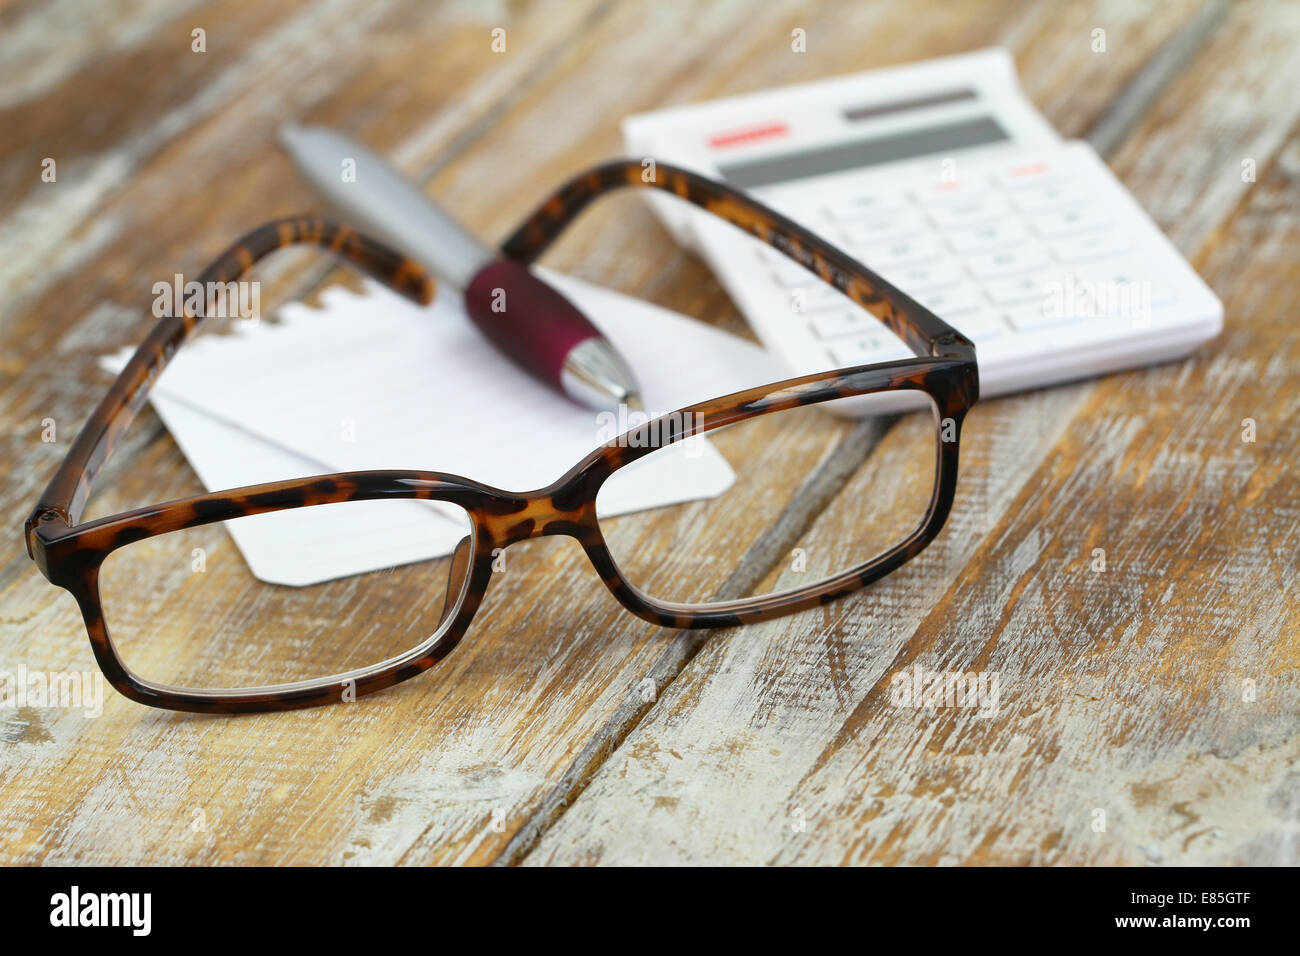 Gafas de lectura, calculadora, lápiz y papel de notas sobre la superficie de madera Foto de stock